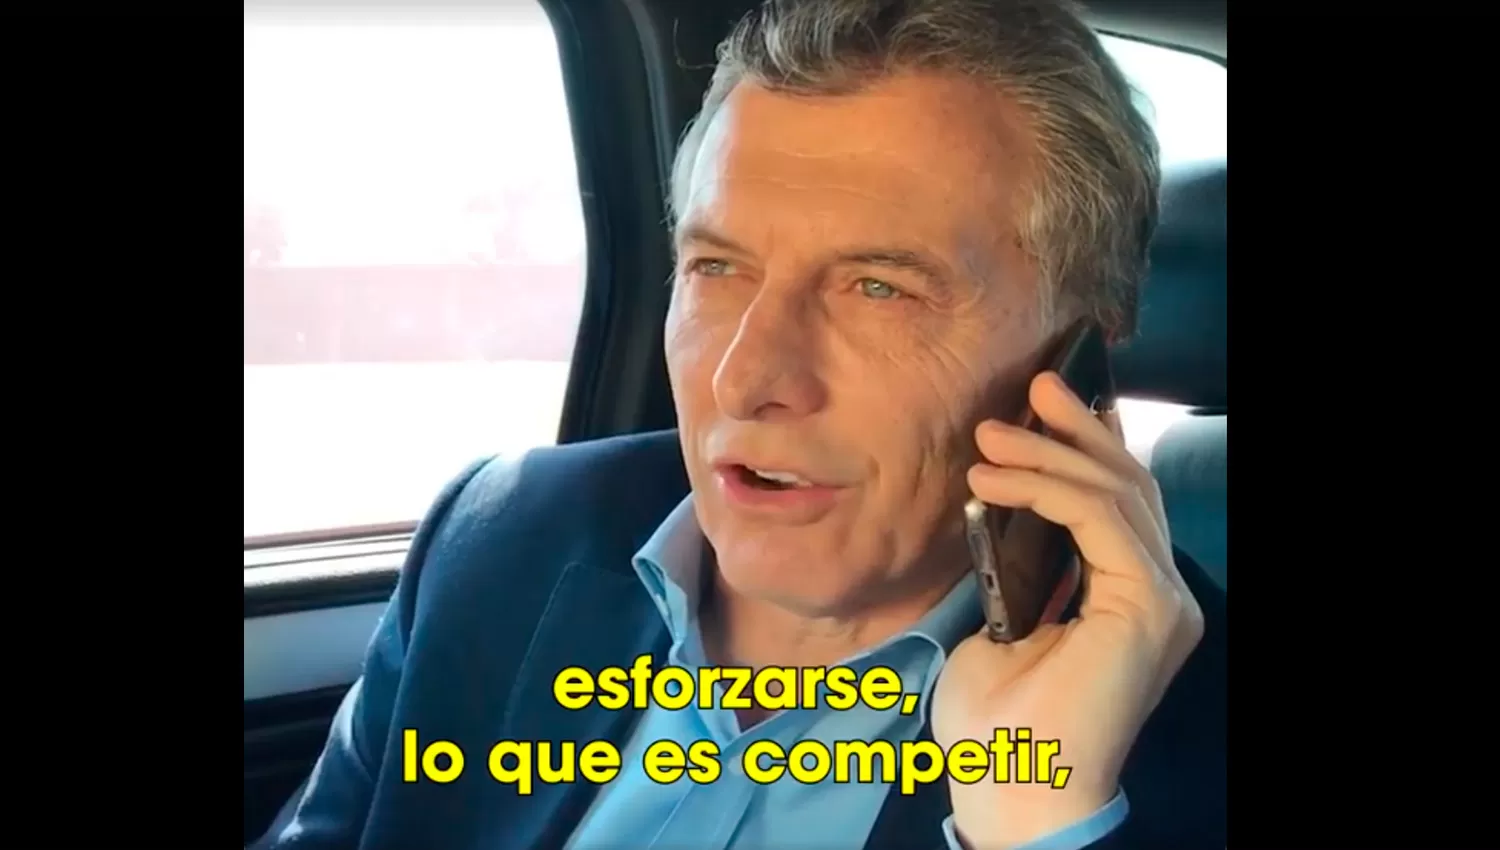 No te me mueras ahora, justo que podemos hablar: la charla de Macri con una tucumana